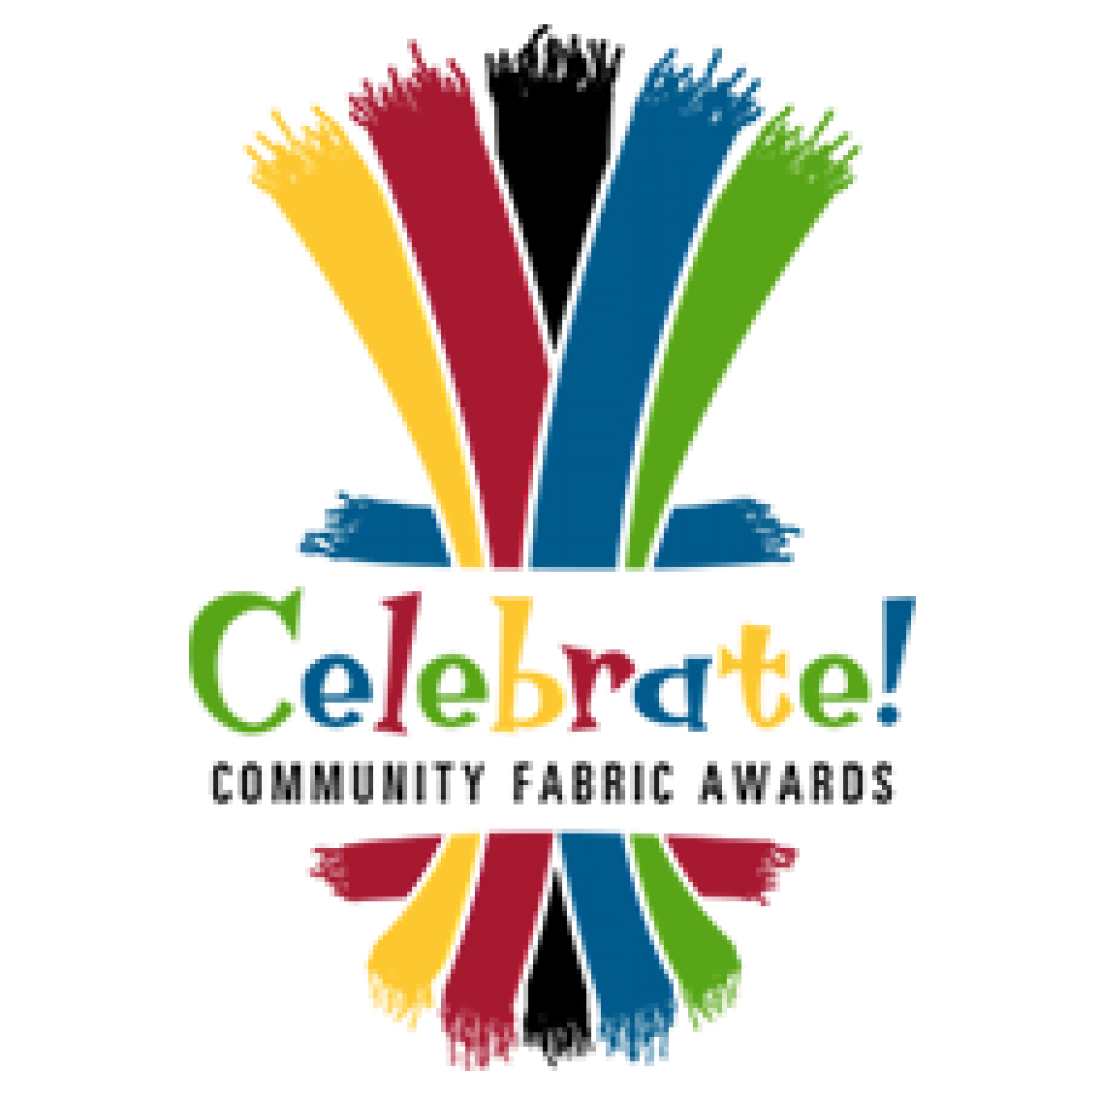 Community Fabric Awards logo